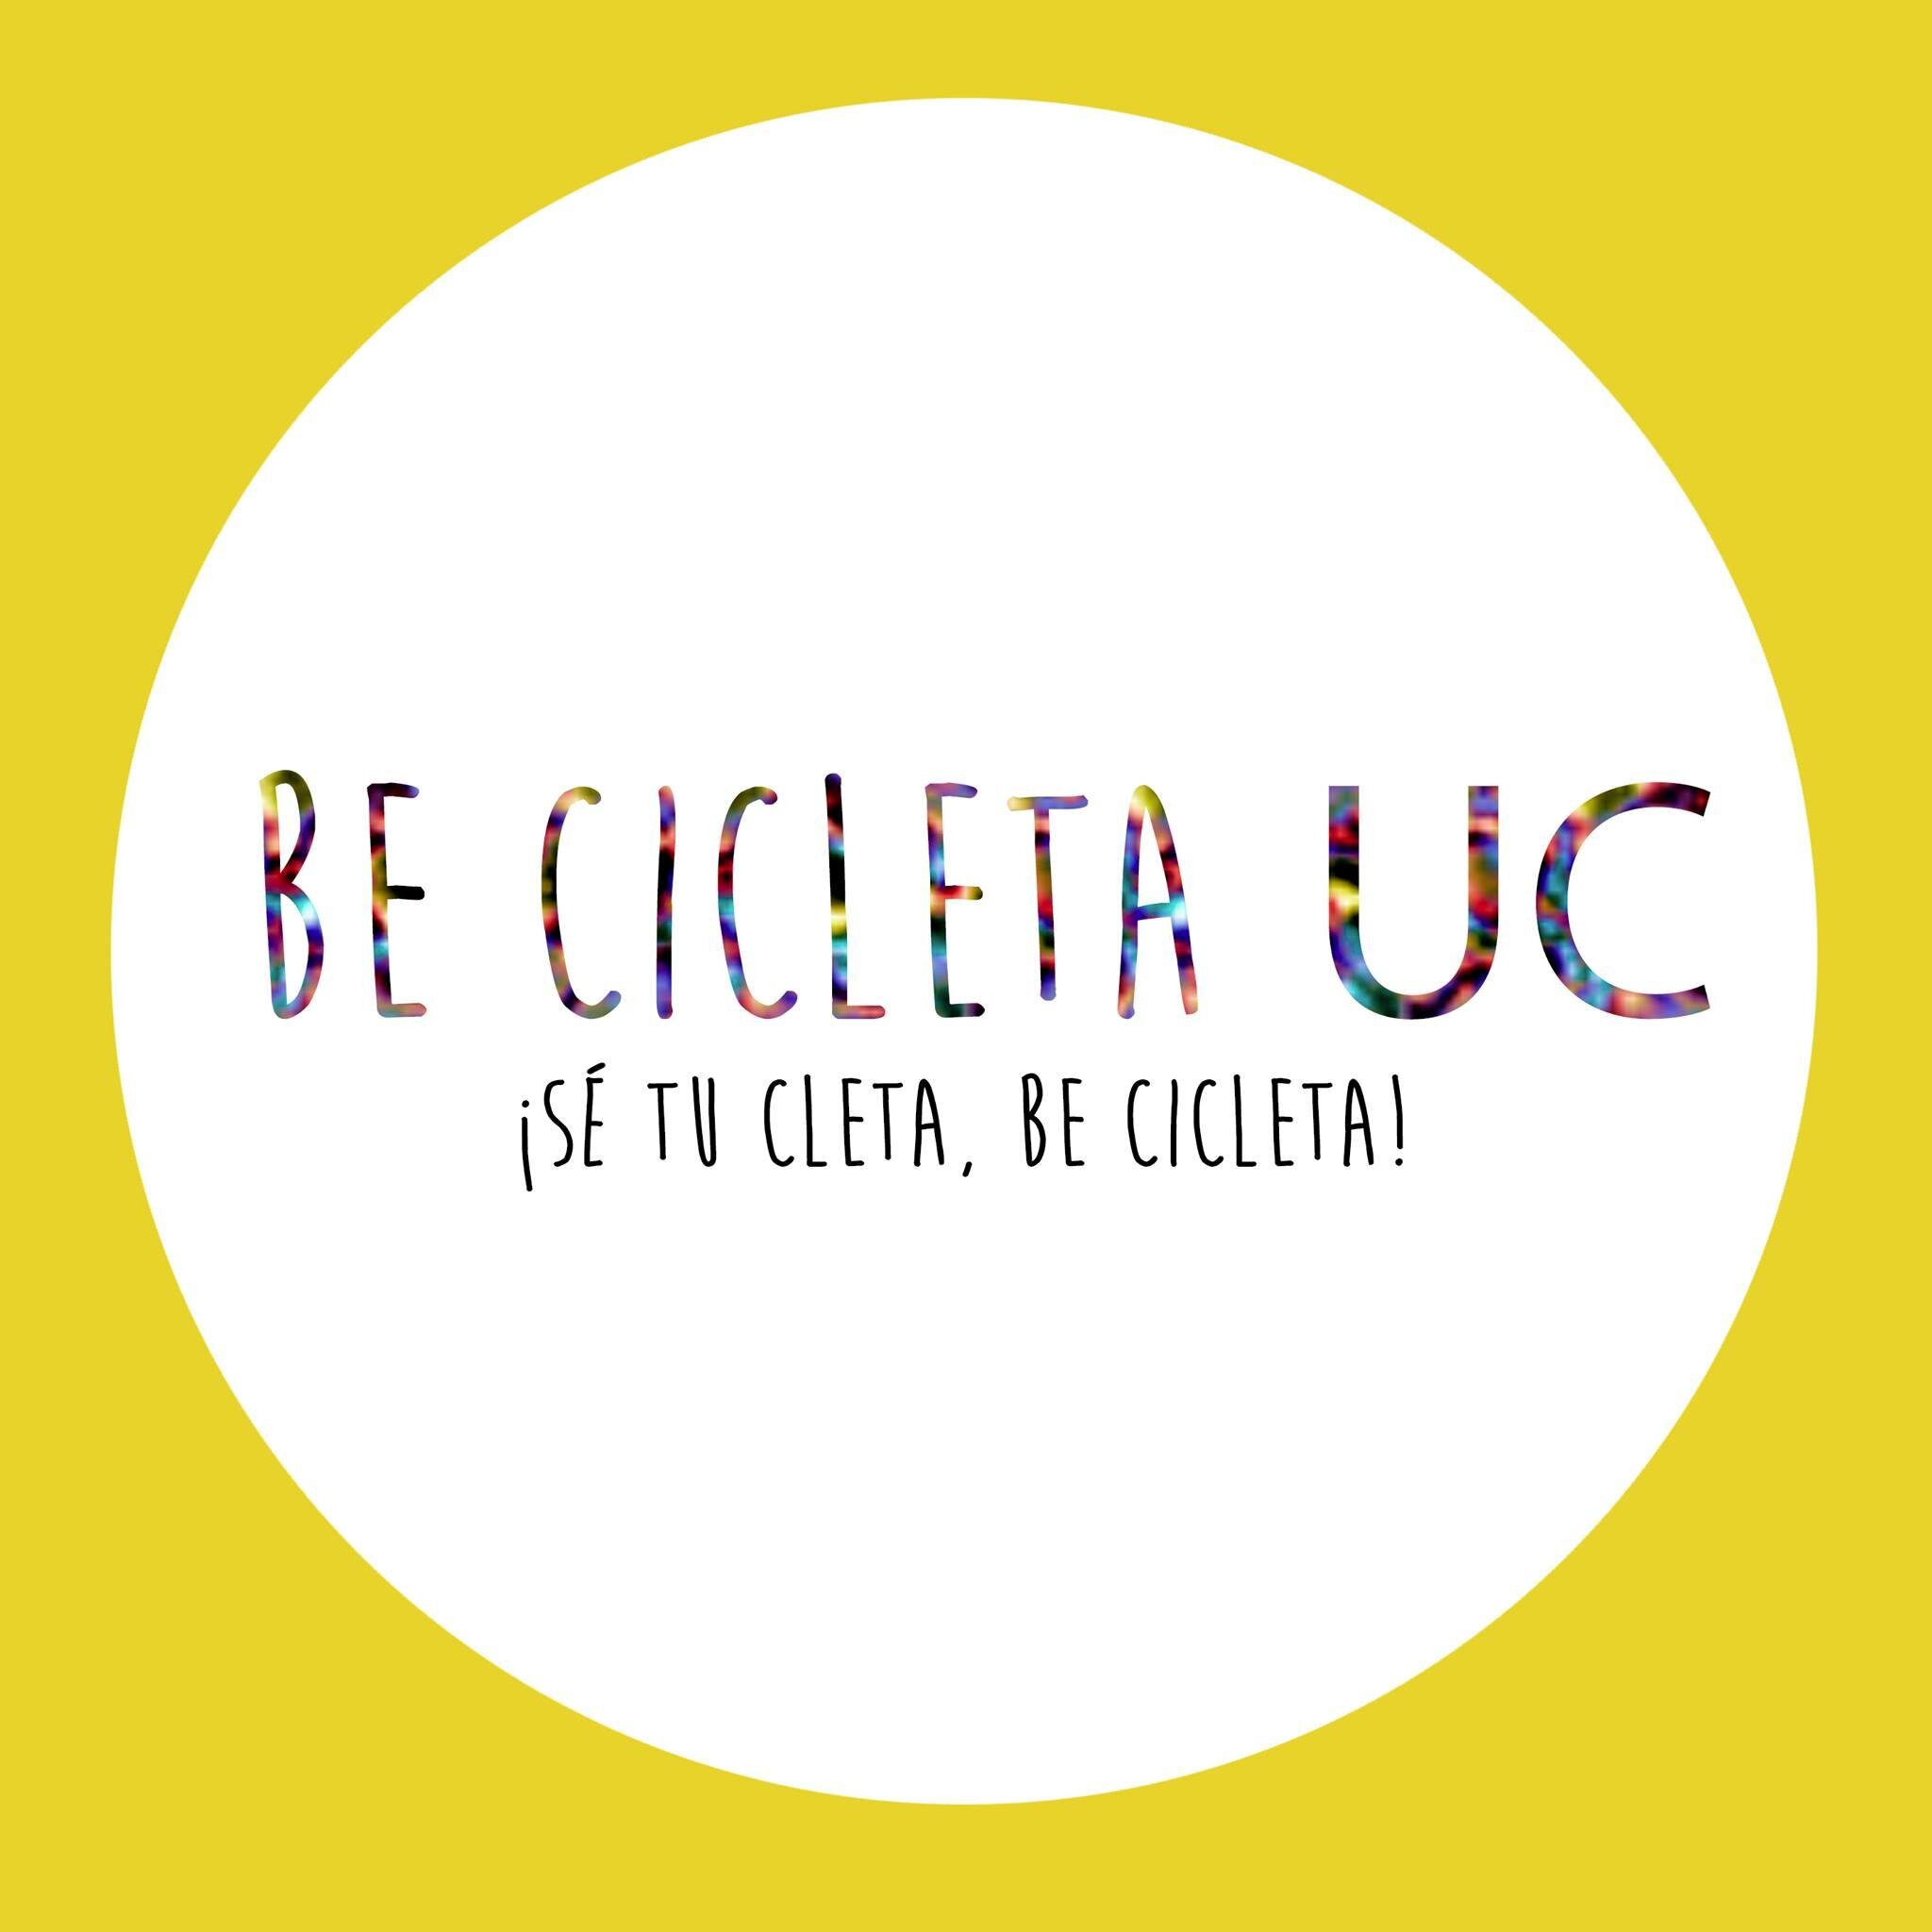 Grupo de estudiantes UC motivados por promover la bici, difundir las rutas y promover un cambio en nuestro estilo de vida. Sé tu cleta, BE cicleta!